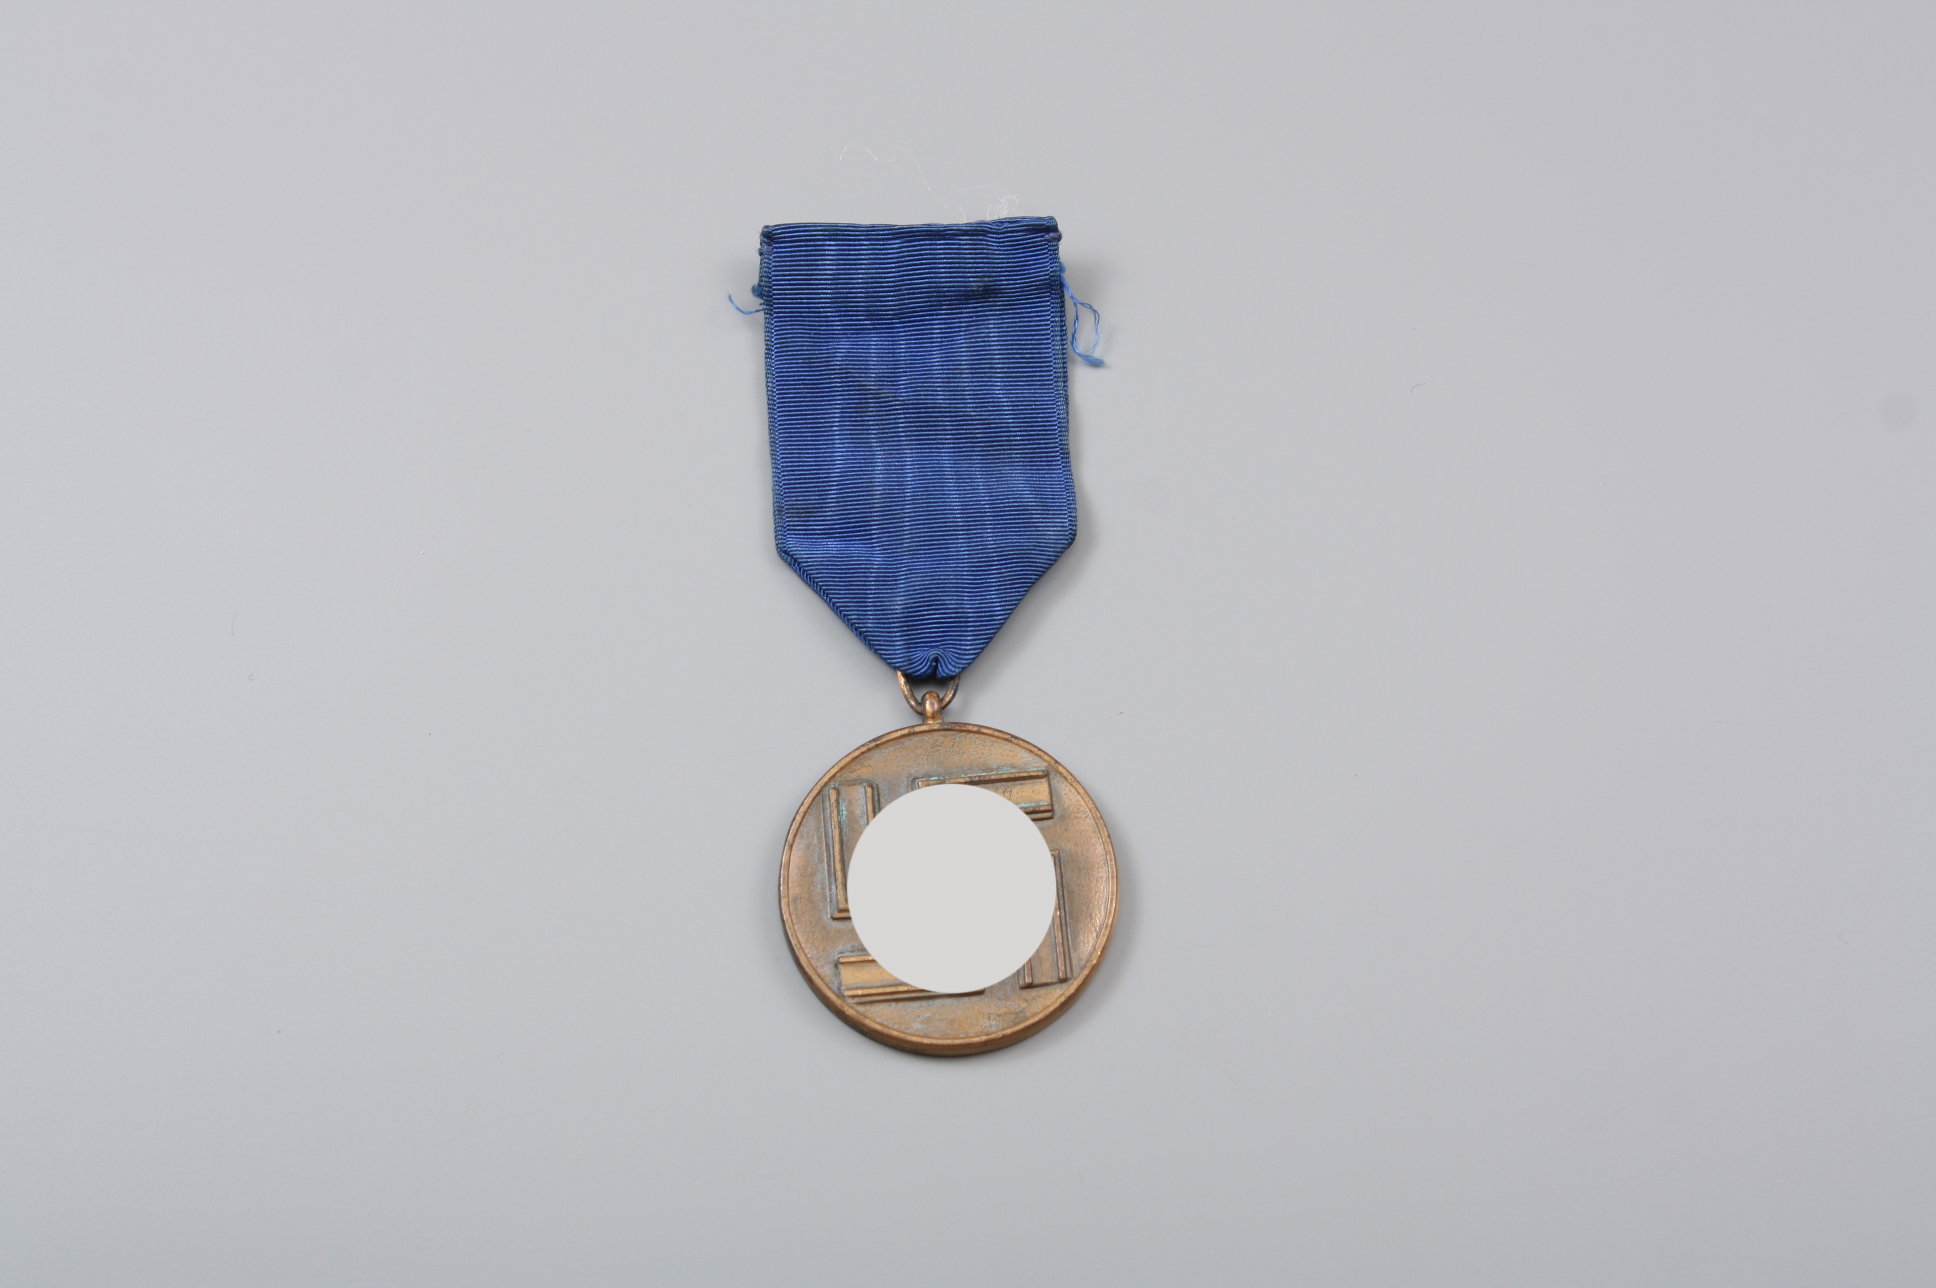  Медаль 8 лет выслуги в "СС", Германия.